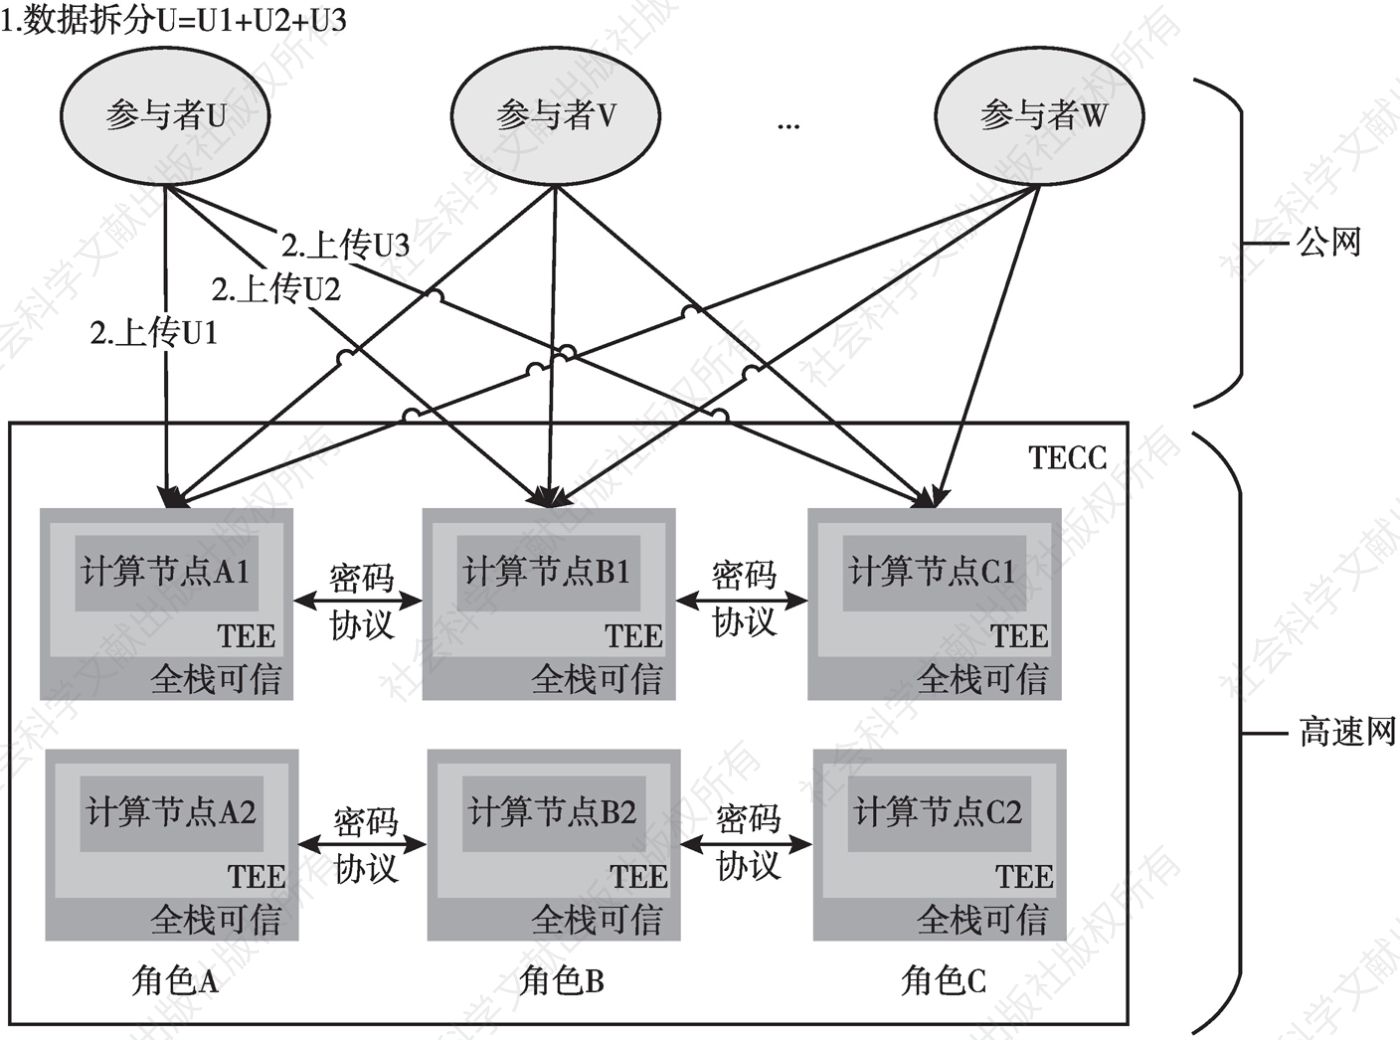 图5-2 TECC系统架构